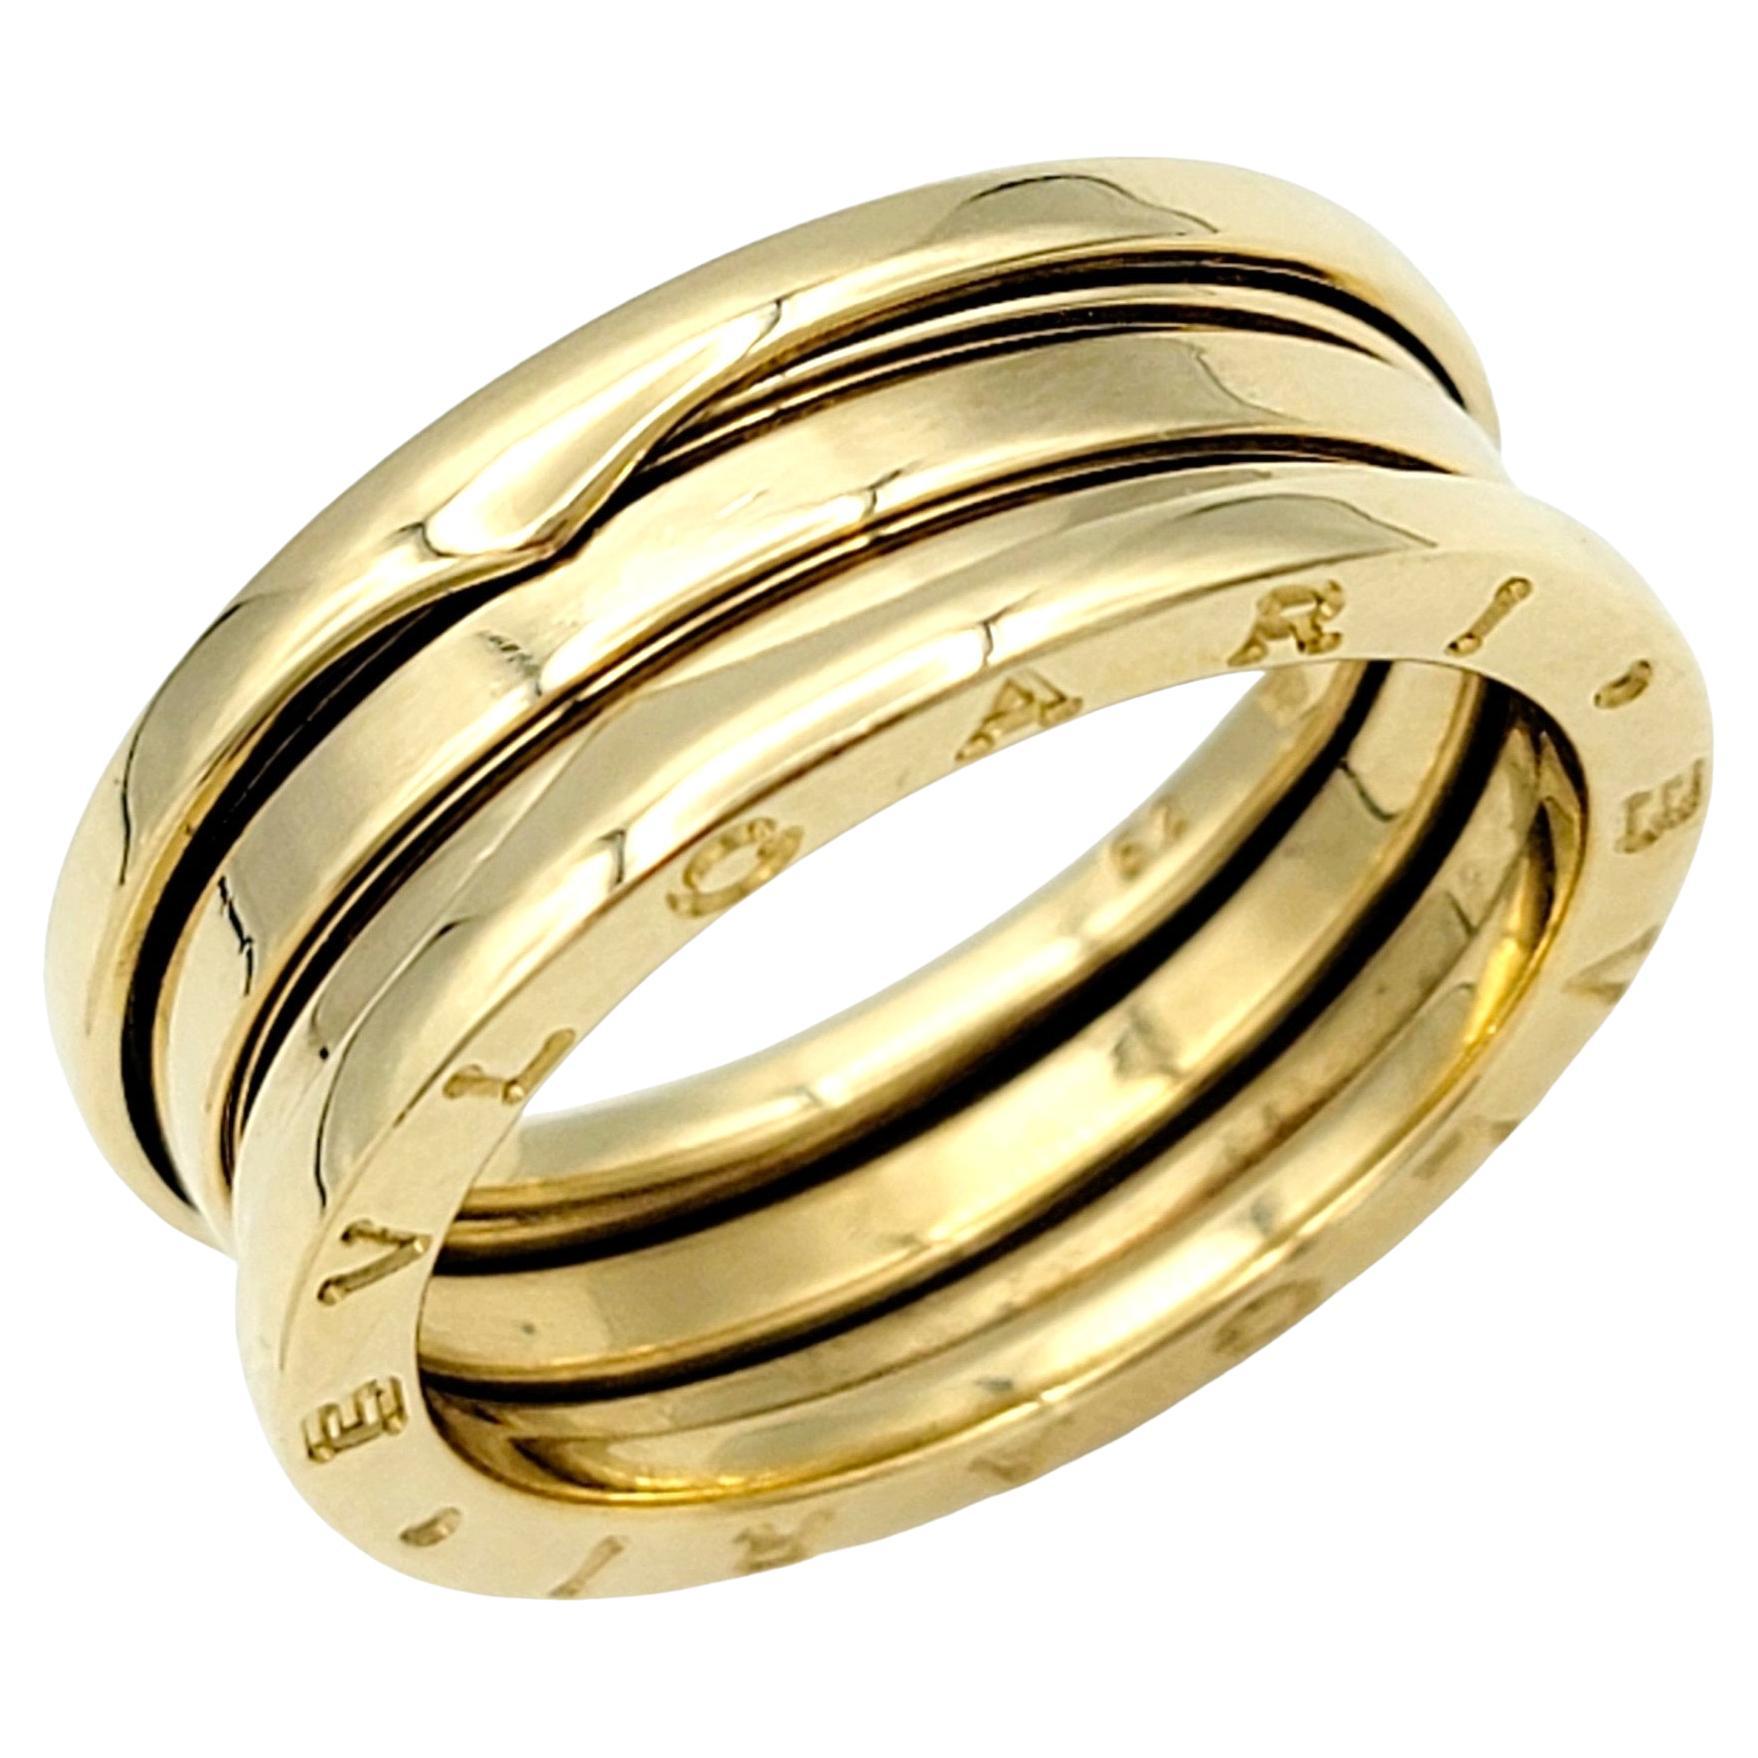 Bvlgari B.ZERO1, bague moderne à trois anneaux en or jaune 18 carats avec logo gravé